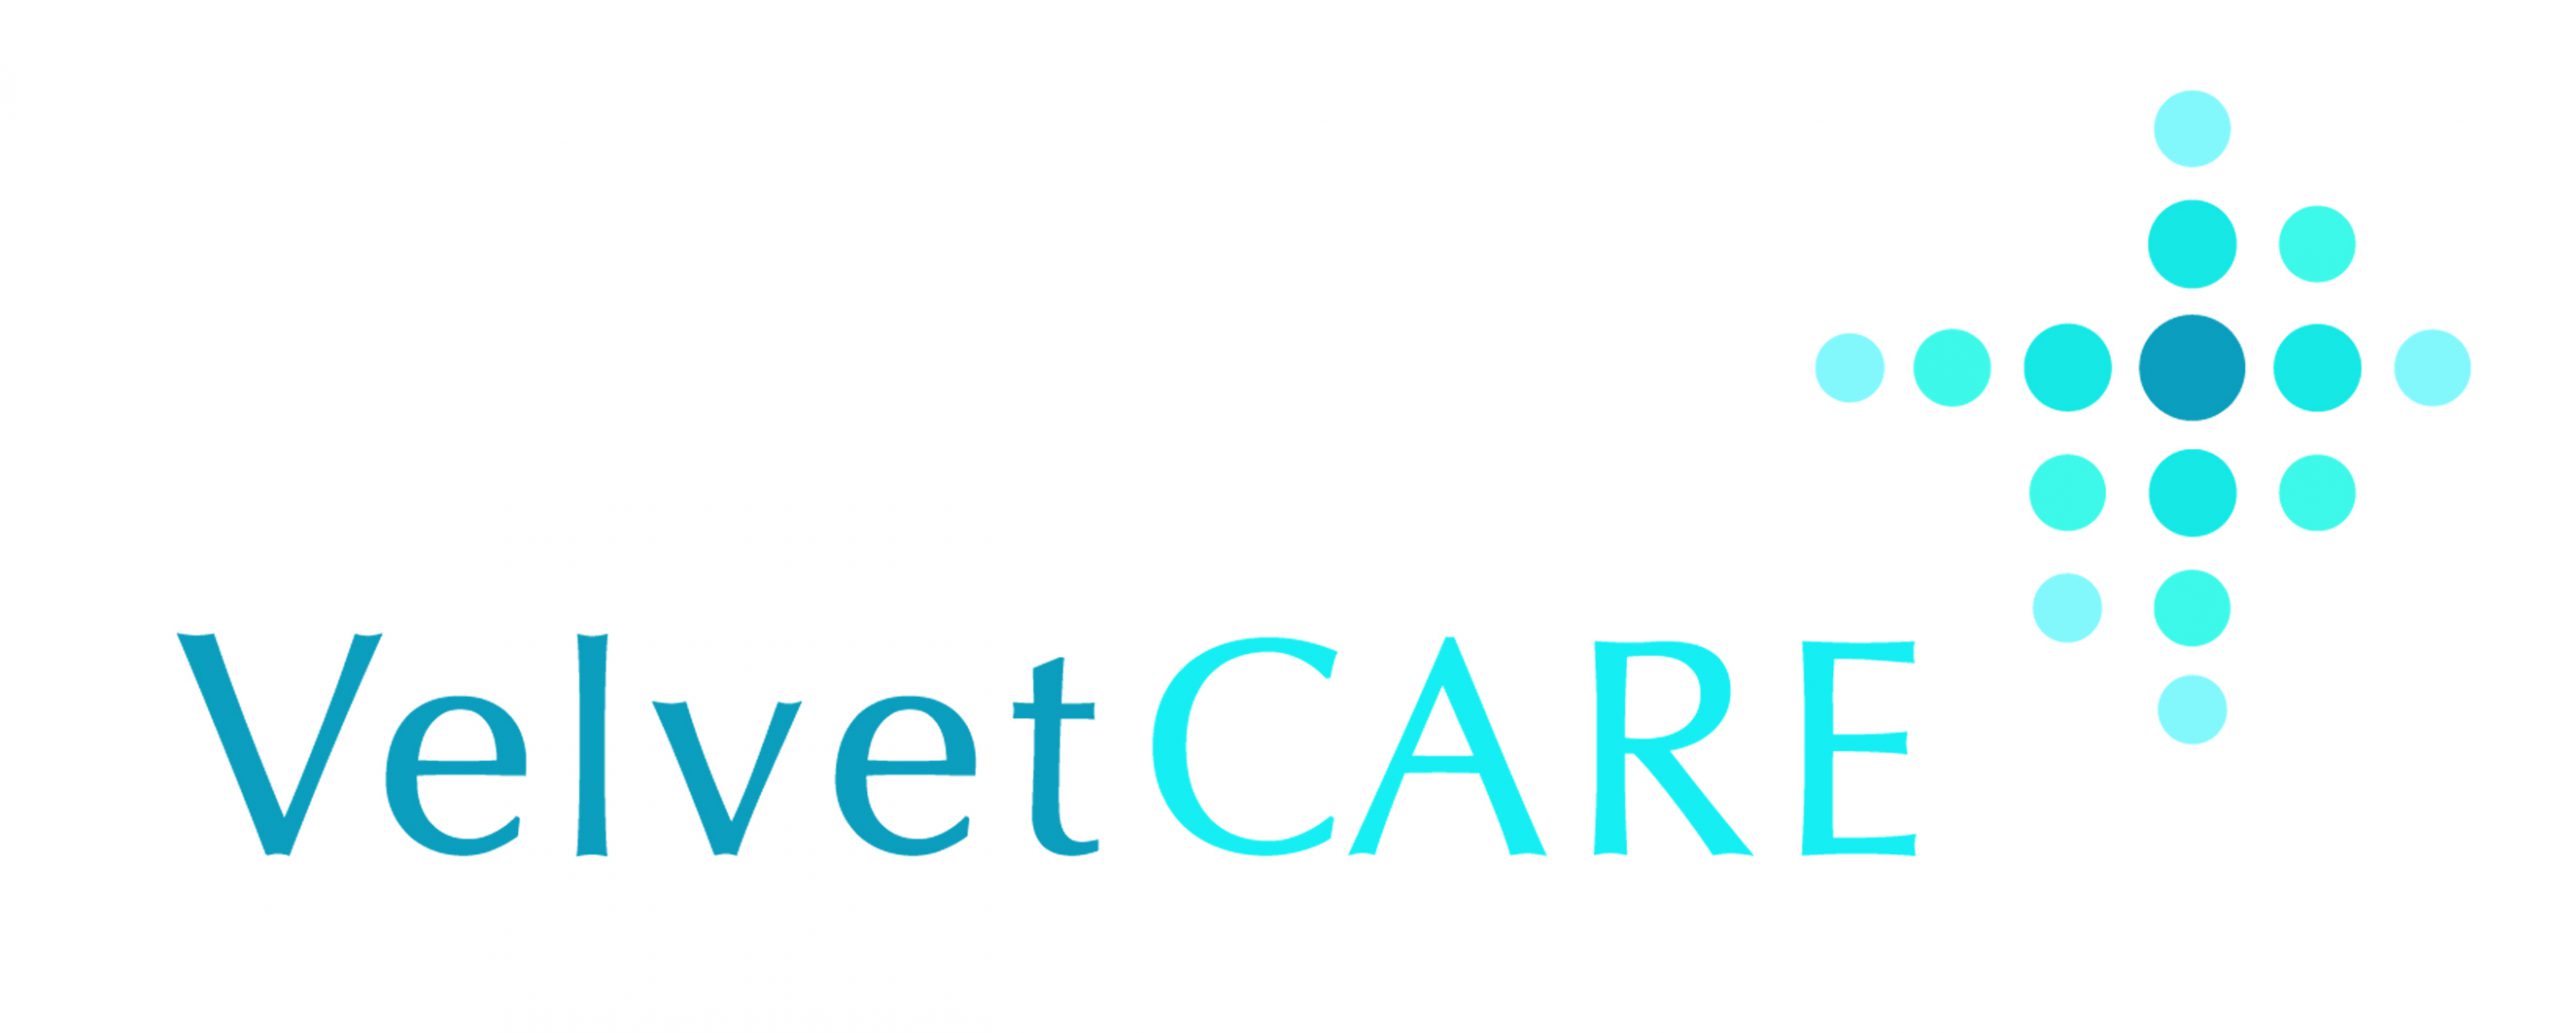 Velvet CARE ma nowego właściciela